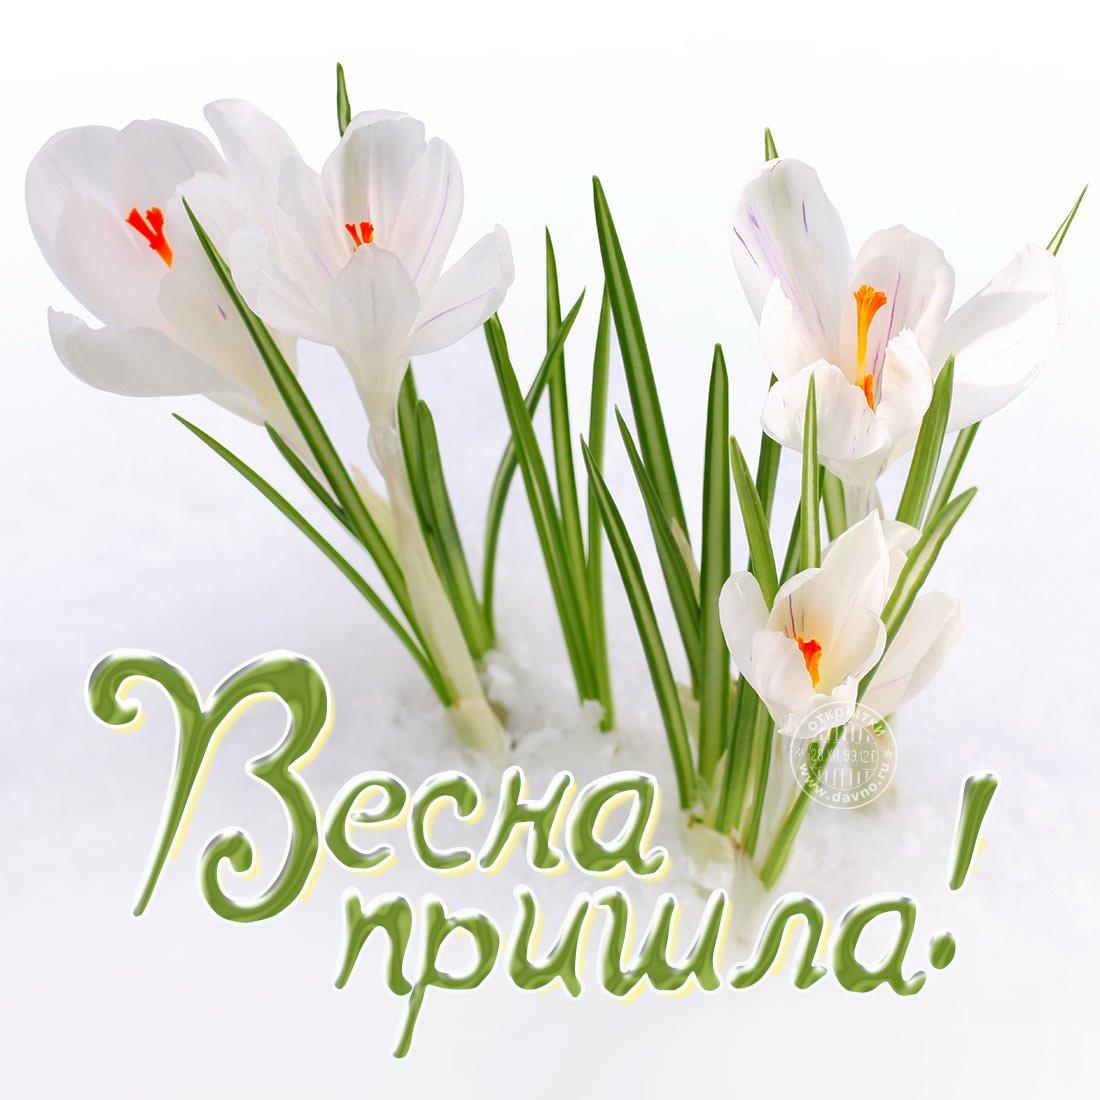 День прихода весны картинки (45 фото) » Красивые картинки, поздравления и  пожелания - Lubok.club